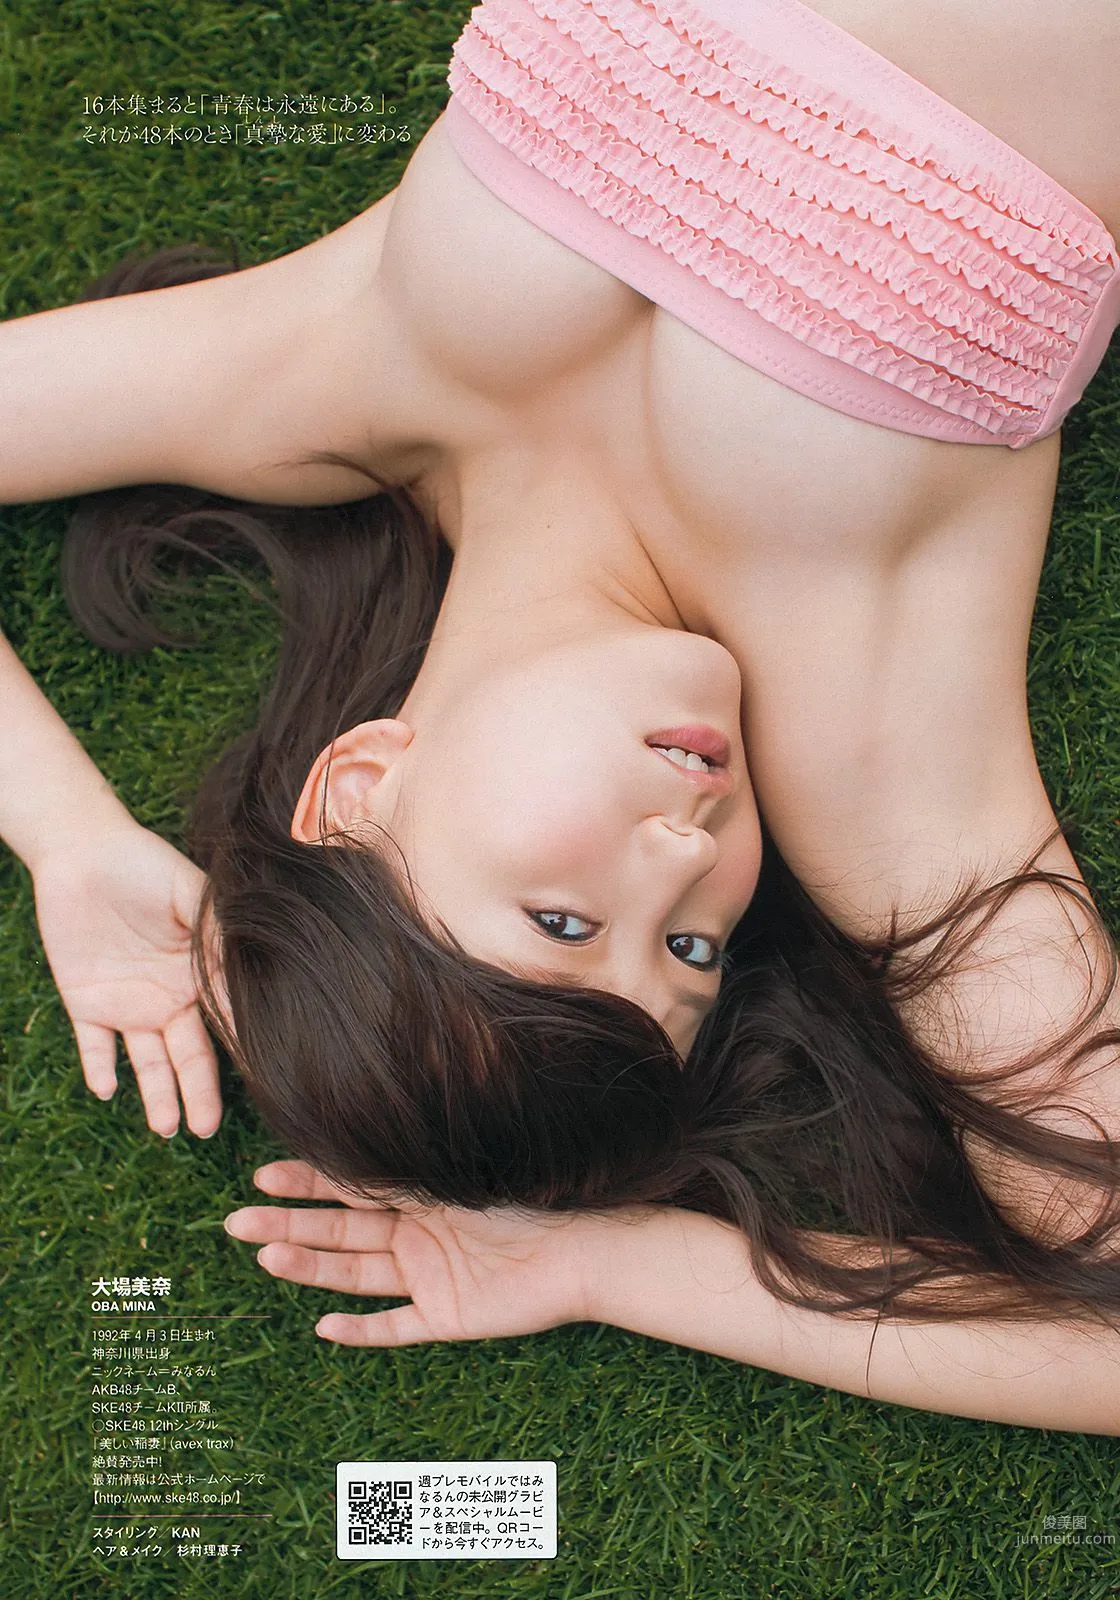 夏菜 大场美奈 島崎遙香 篠崎愛 中条あやみ [Weekly Playboy] 2013年No.32 写真杂志13